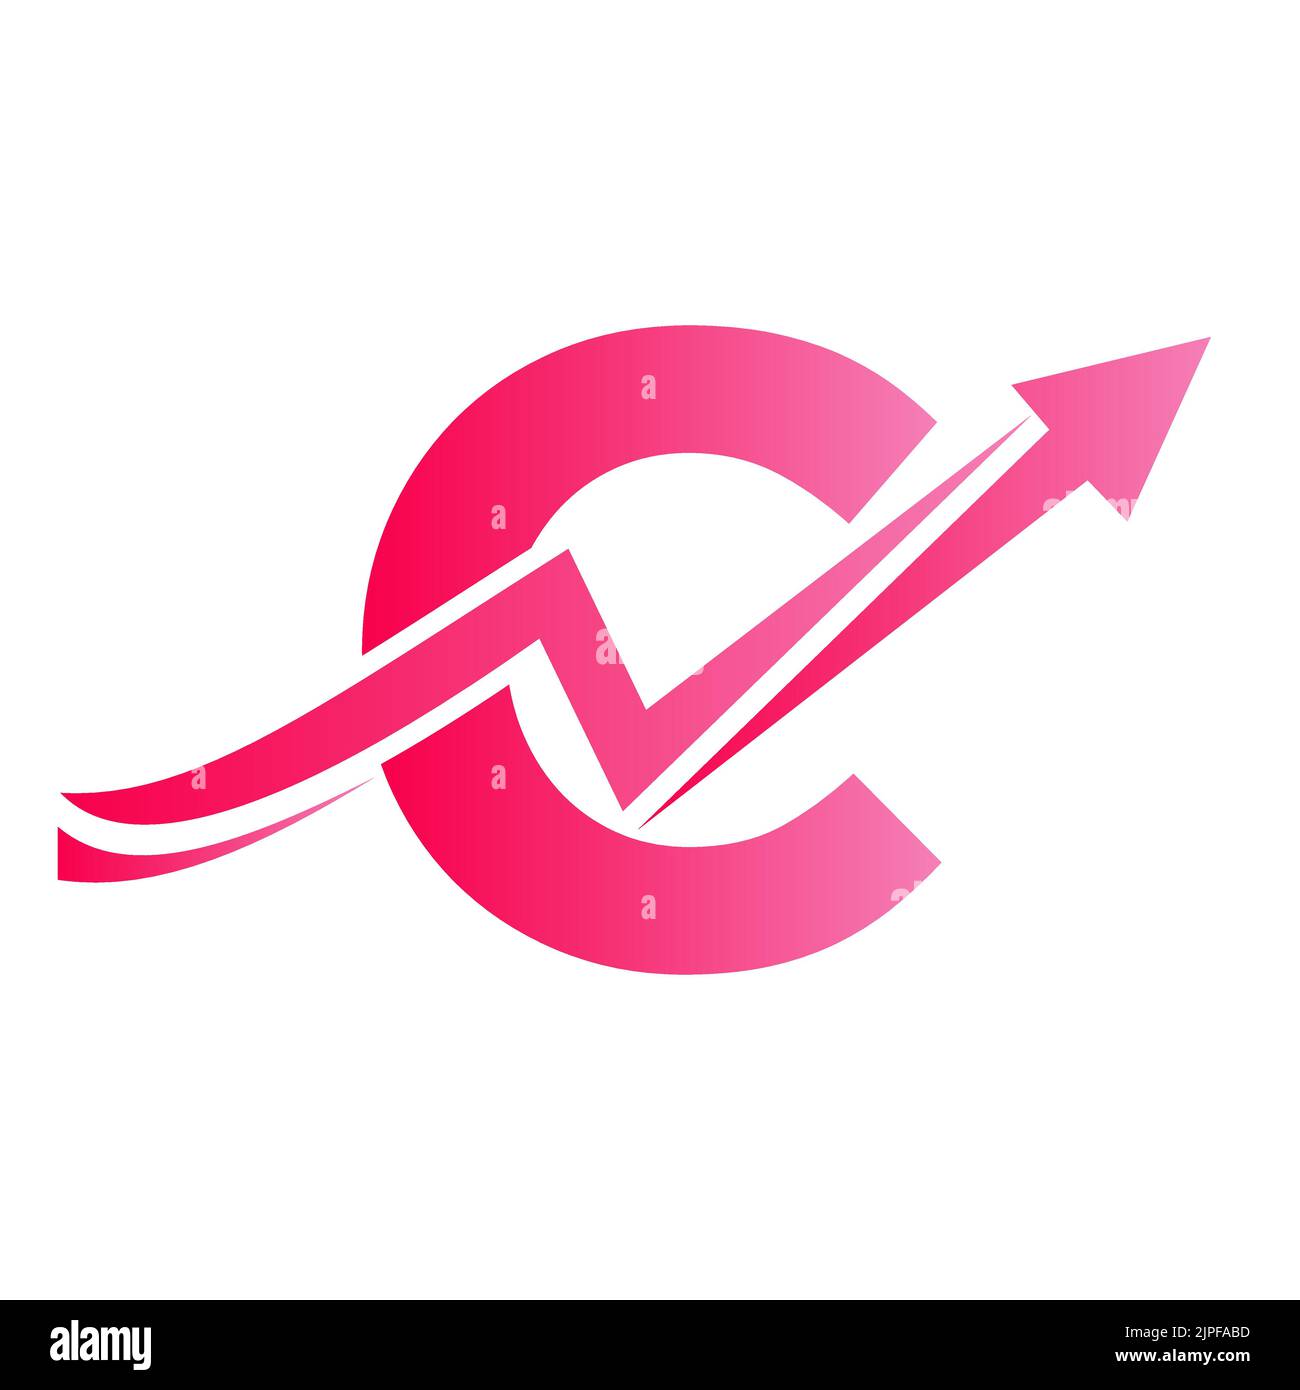 Lettre C logo financier avec flèche de croissance. Logo économique Sign On Alphabet C Vector Template Illustration de Vecteur